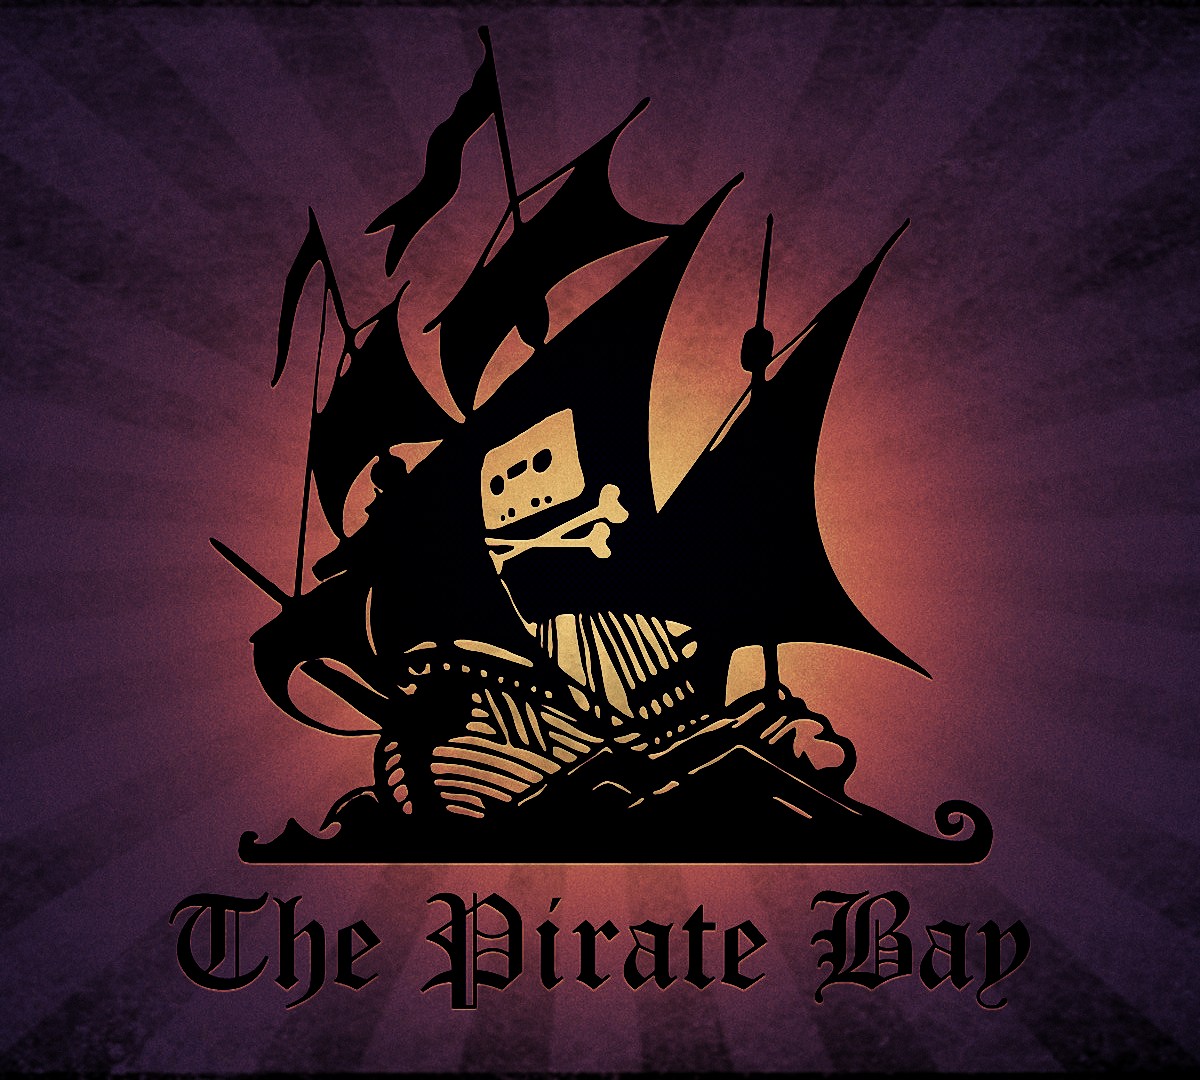 Torrents mais antigos do 'Pirate Bay' já estão disponíveis há 13 anos -  Olhar Digital